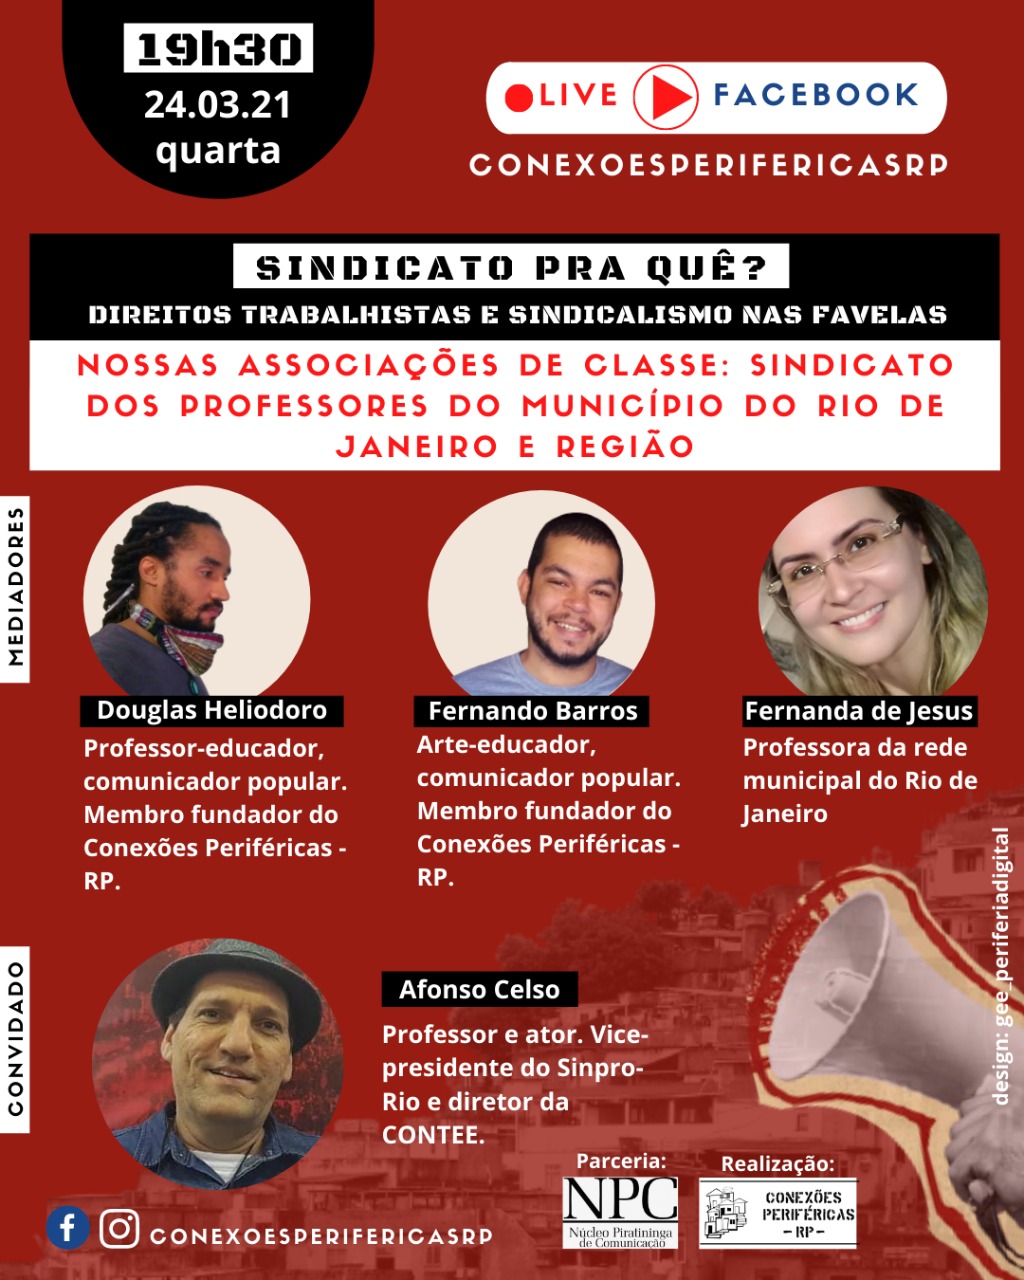 Conexões periféricas debate sindicalismo e favela